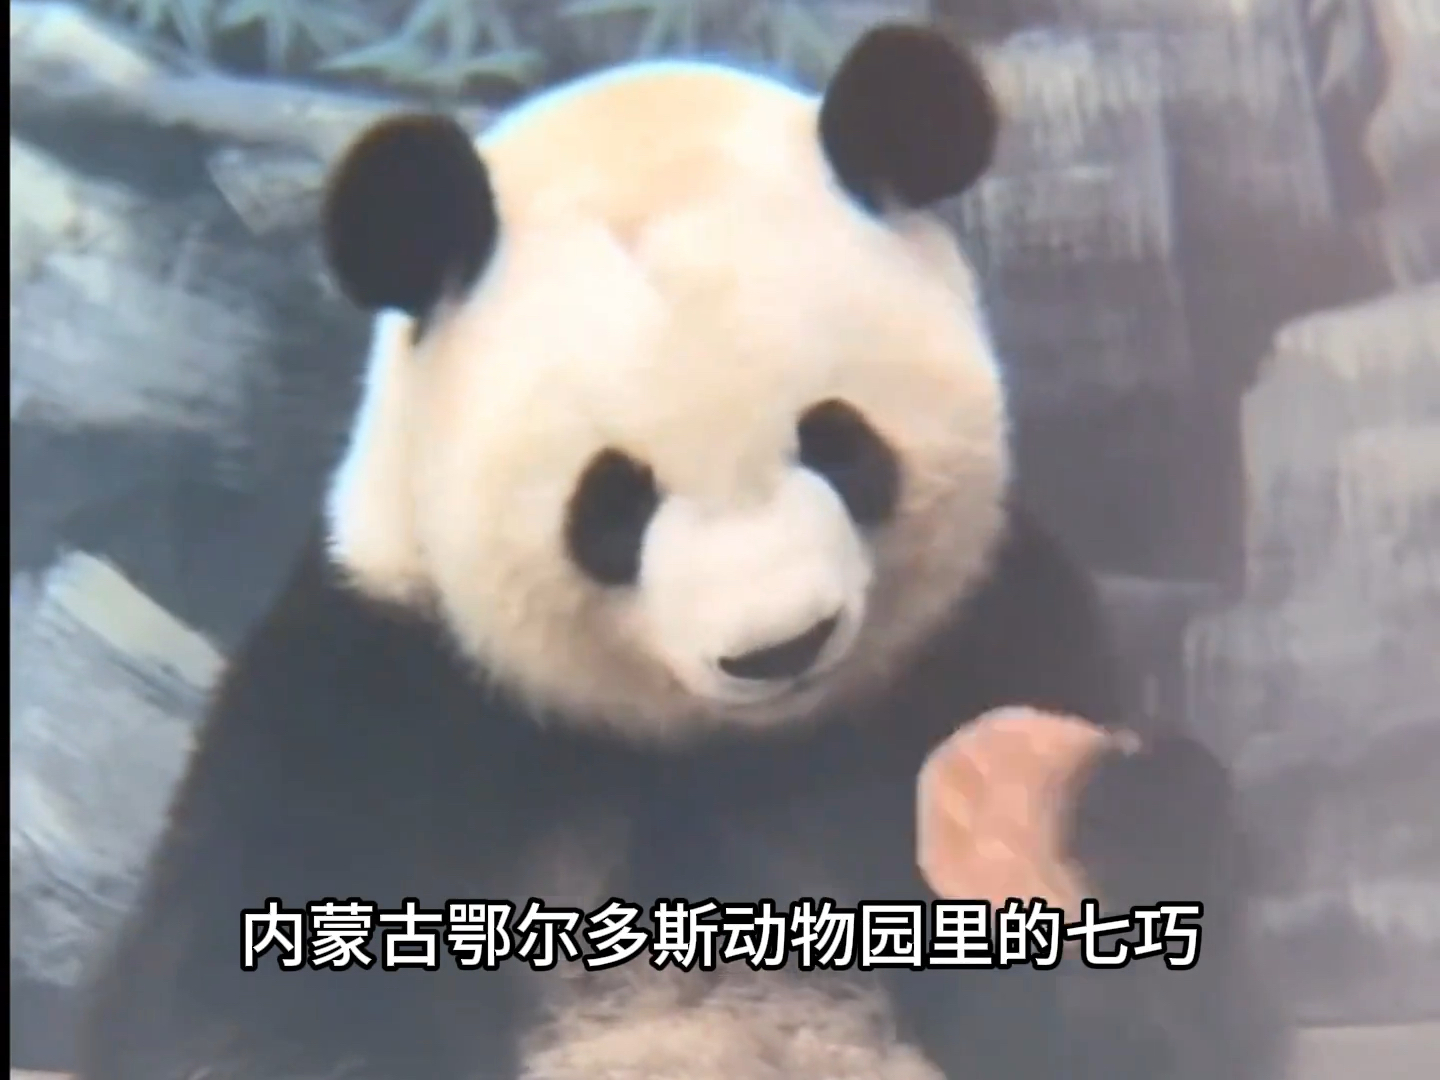 第一次在熊猫脸上看到了无语七巧吃窝窝头咬下去是人情吐出来是事故。#七巧七喜 #七巧 #七喜 #大熊猫